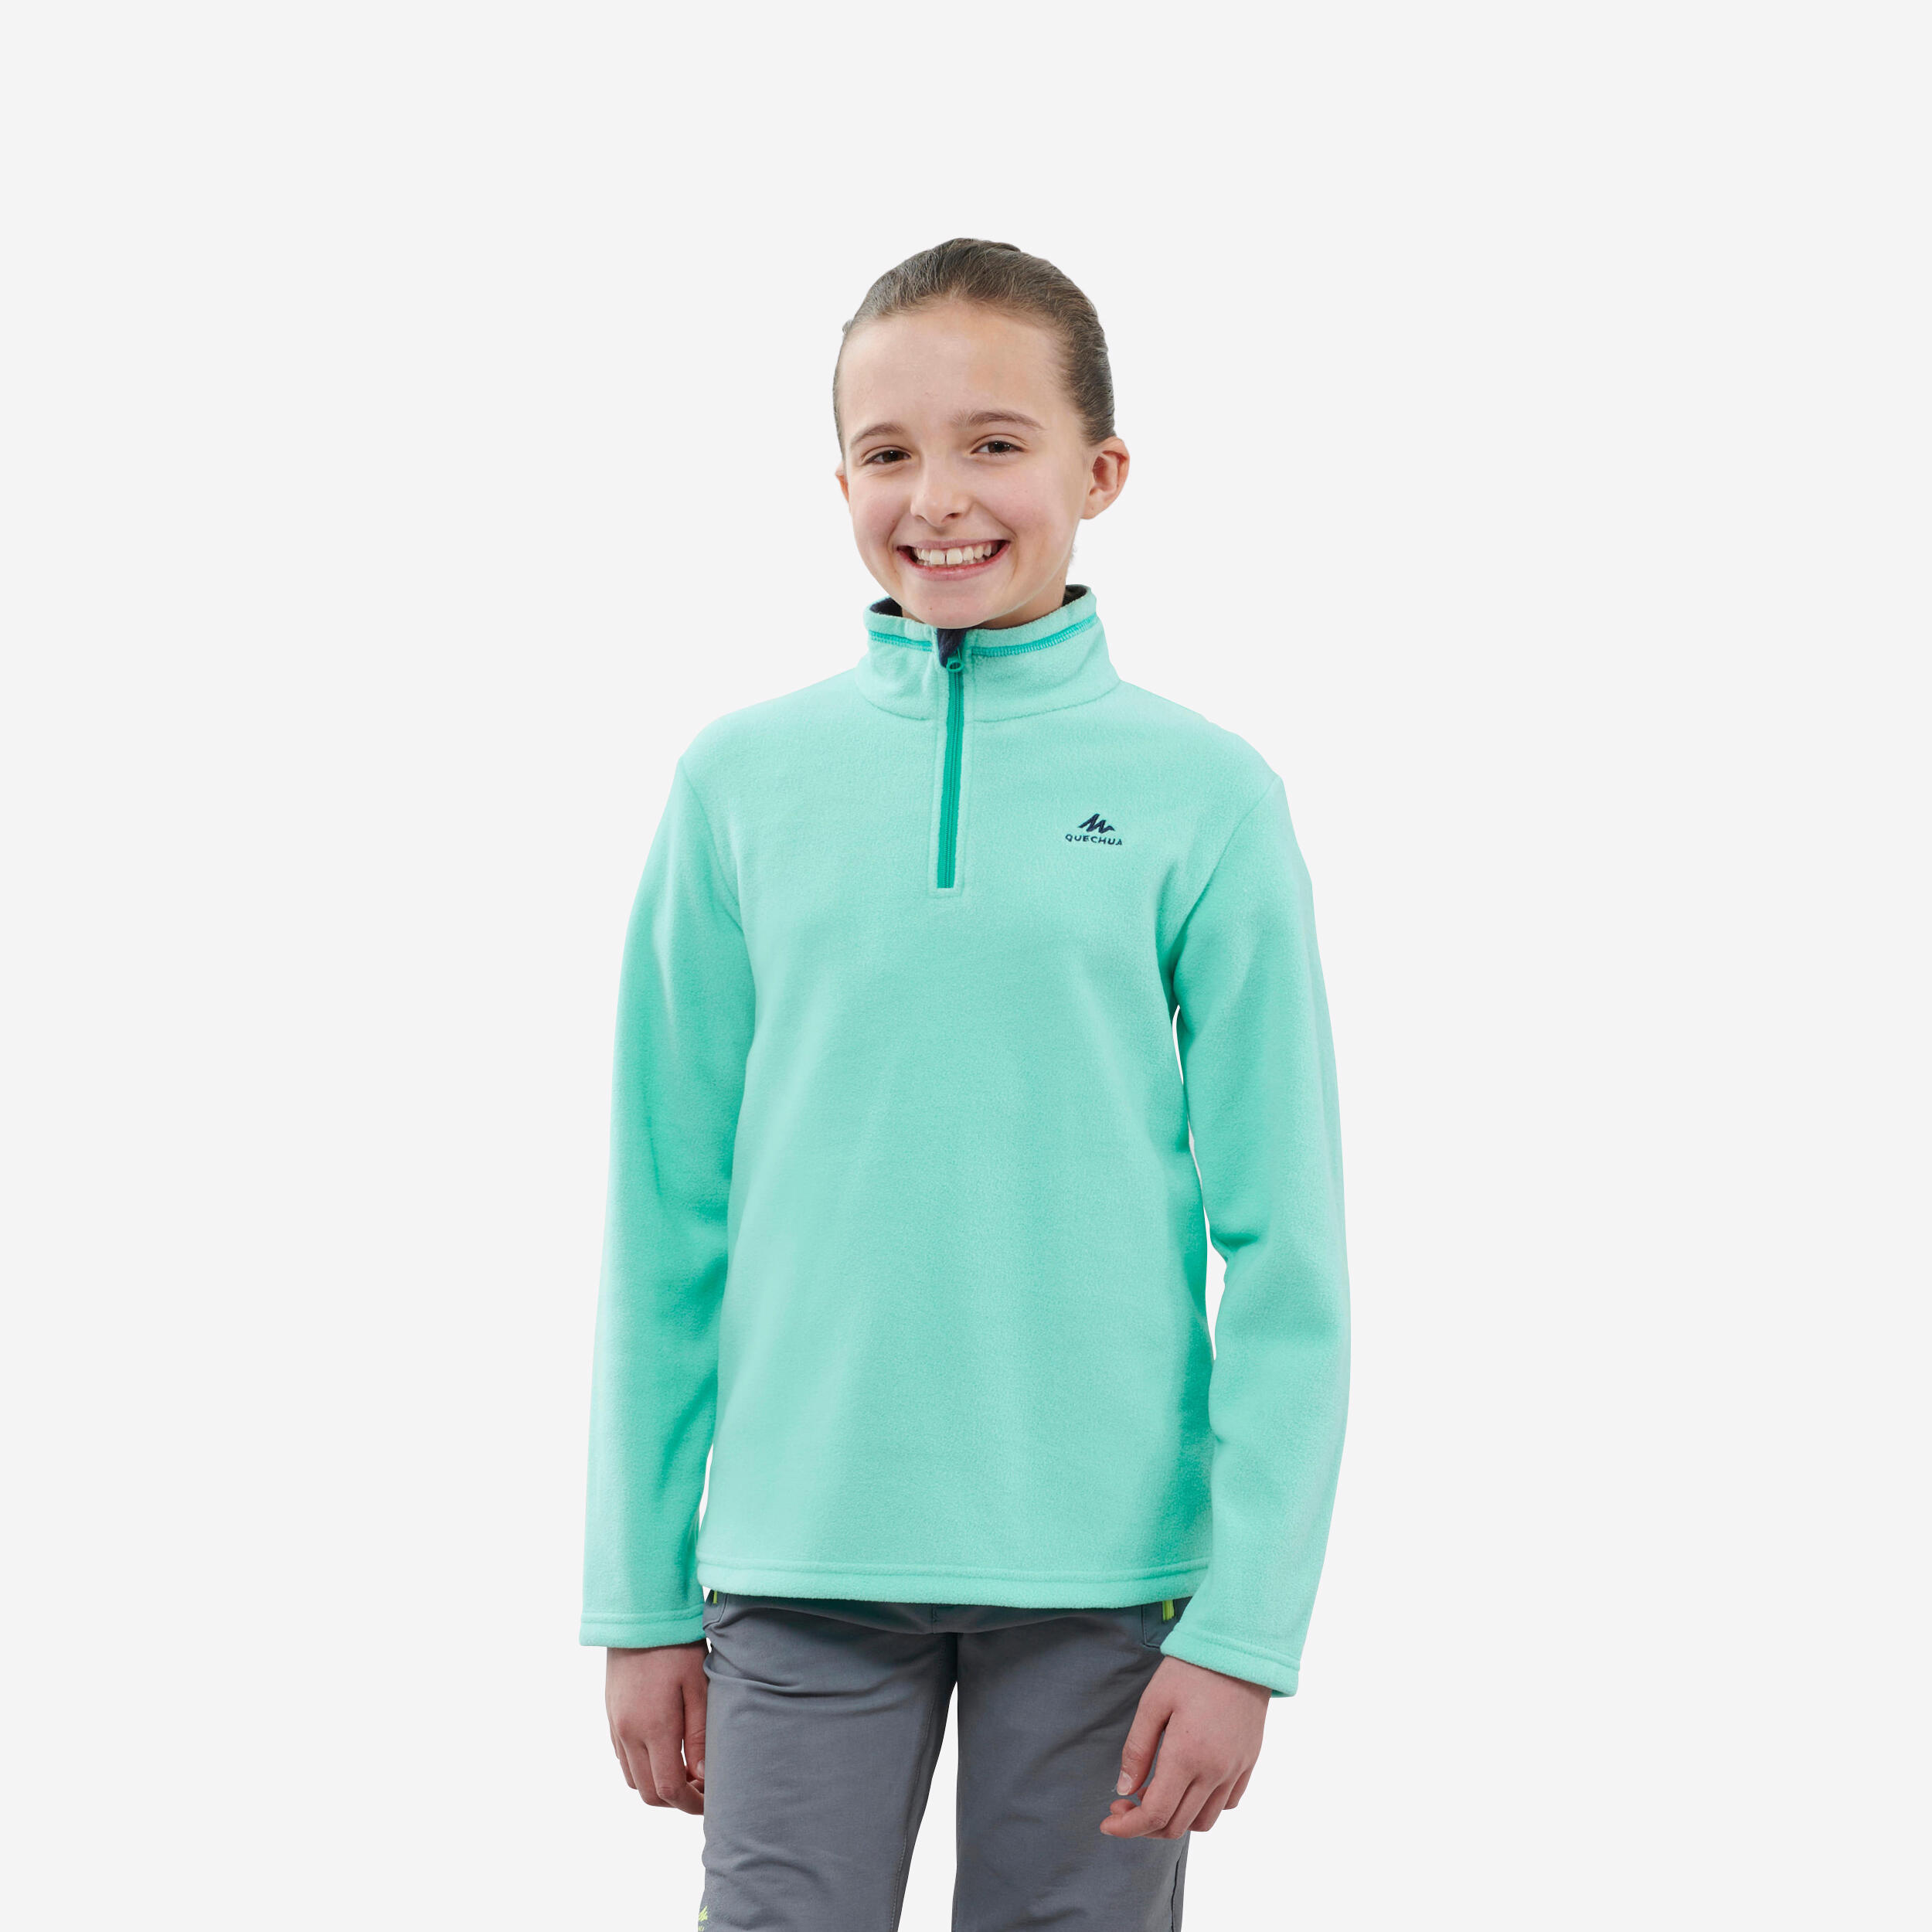 Kids’ Fleece Hiking Sweater - MH 100 - QUECHUA